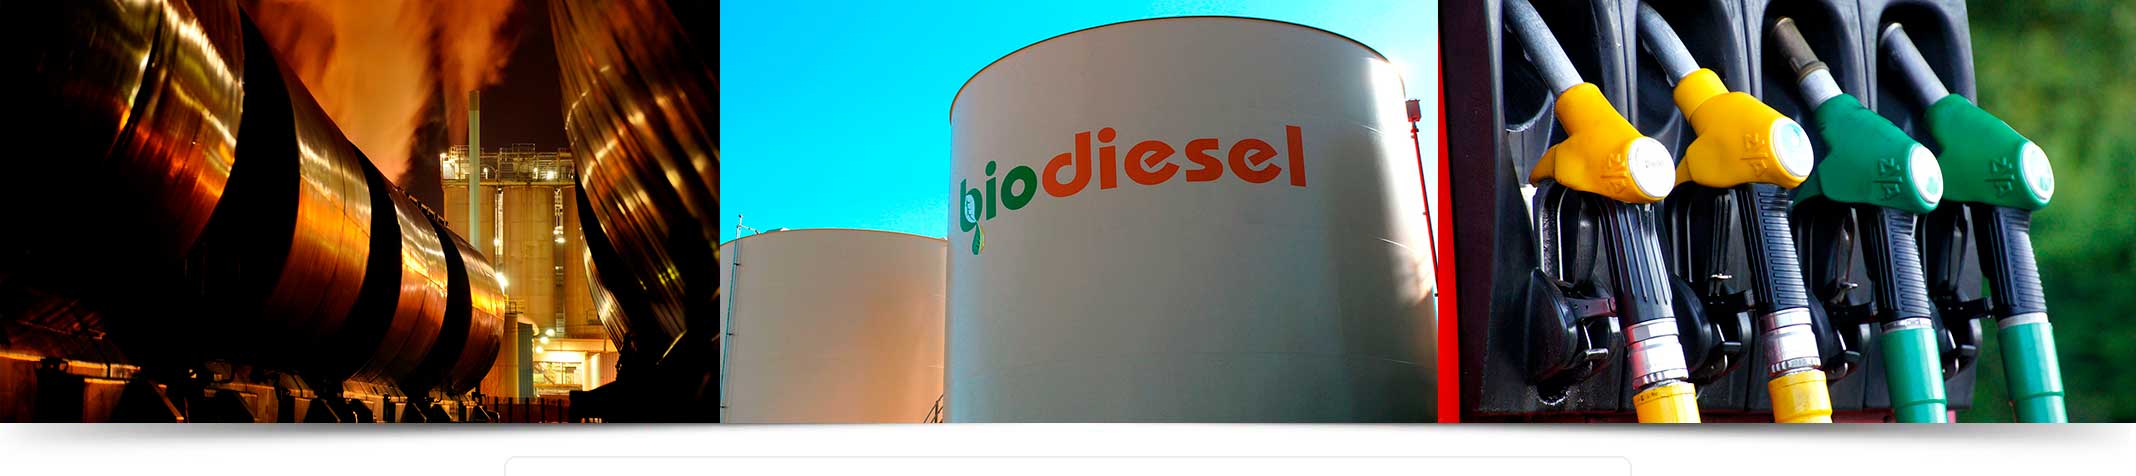 Biodiesel, consultoría química, tratamiento de aguas